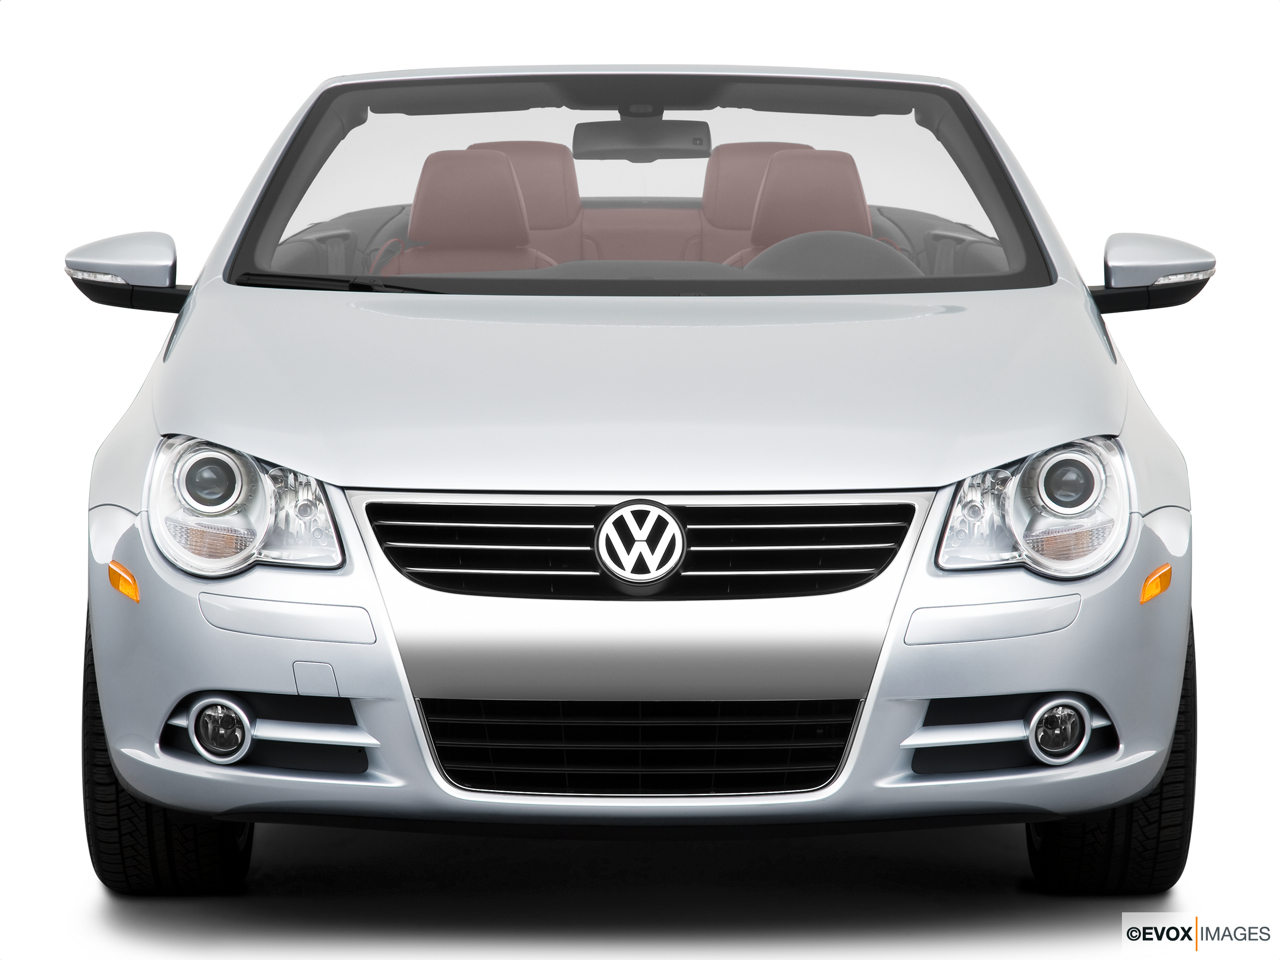 2010 Volkswagen Eos Lux Low/wide front. 